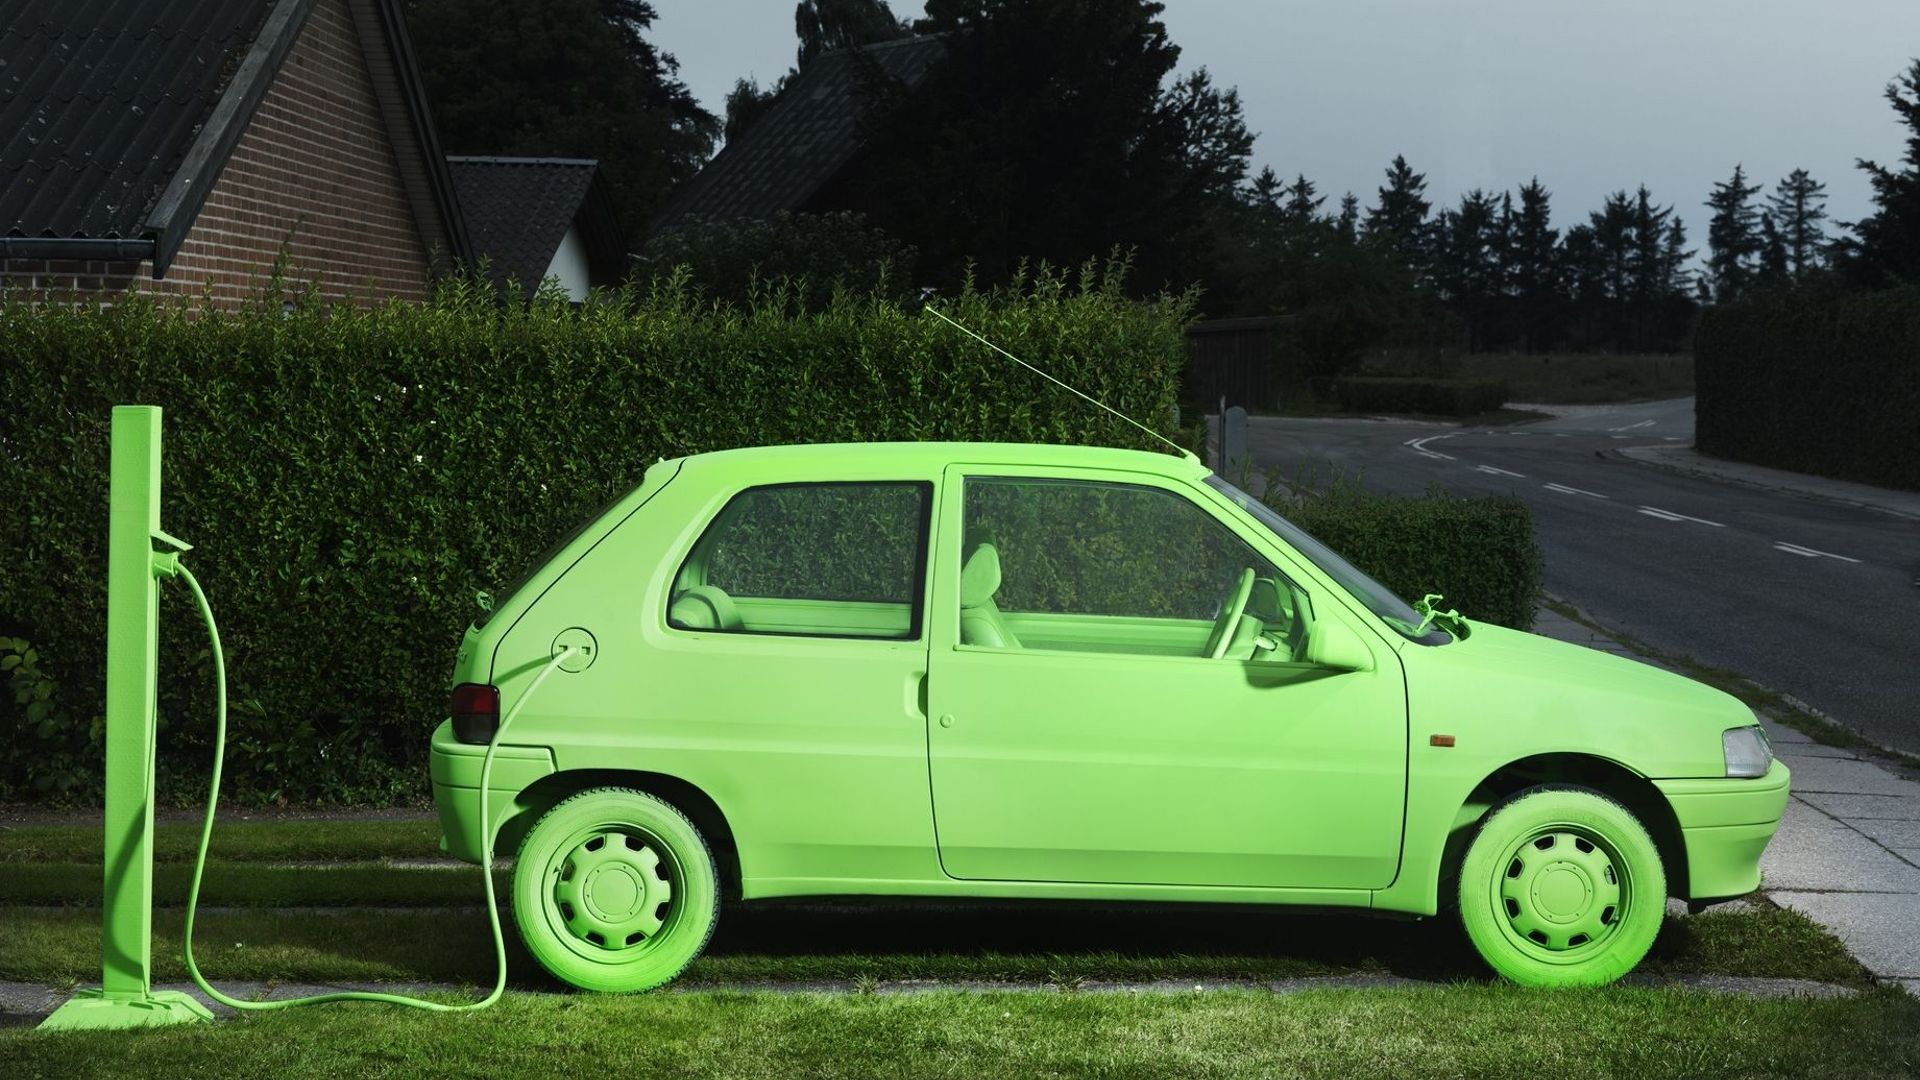 Pour préserver l'environnement, mieux vaut choisir une voiture électrique légère et à l'autonomie limitée.